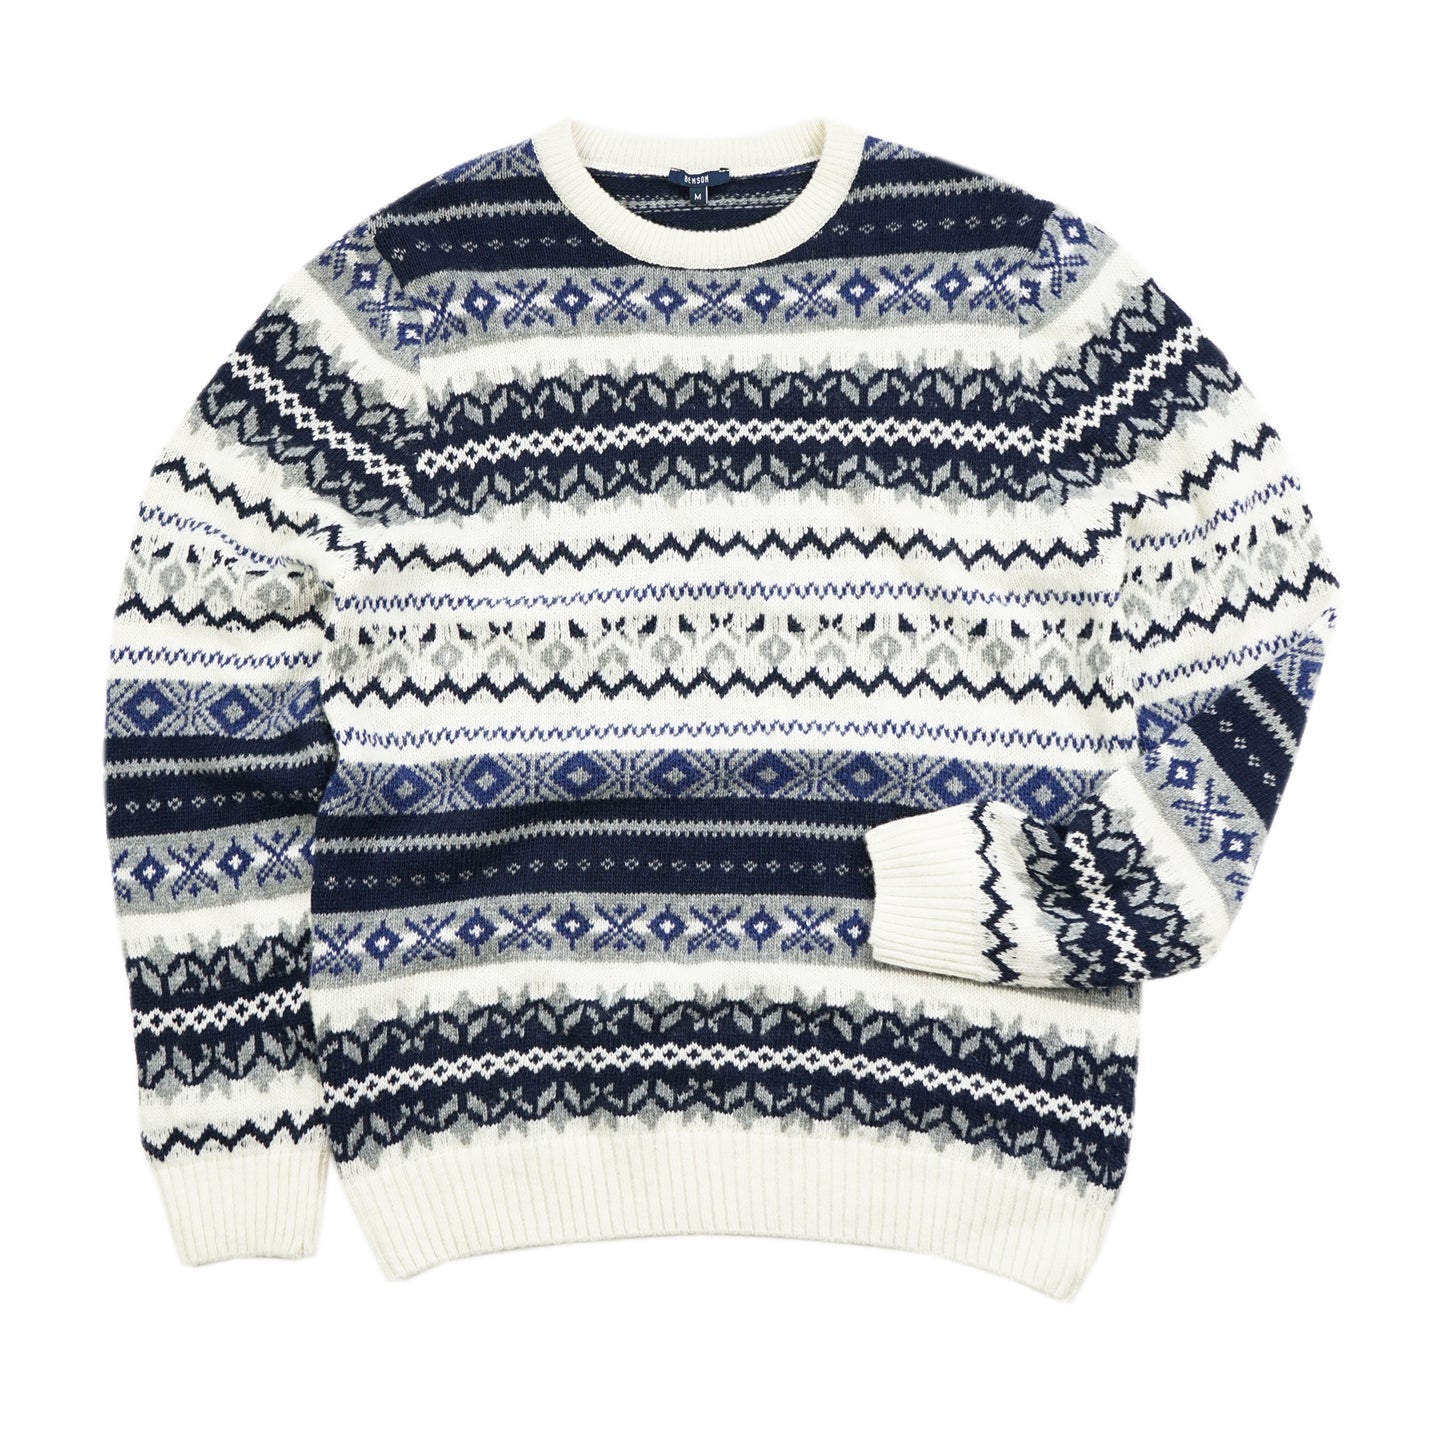 Chester Navy Fairisle Sweater